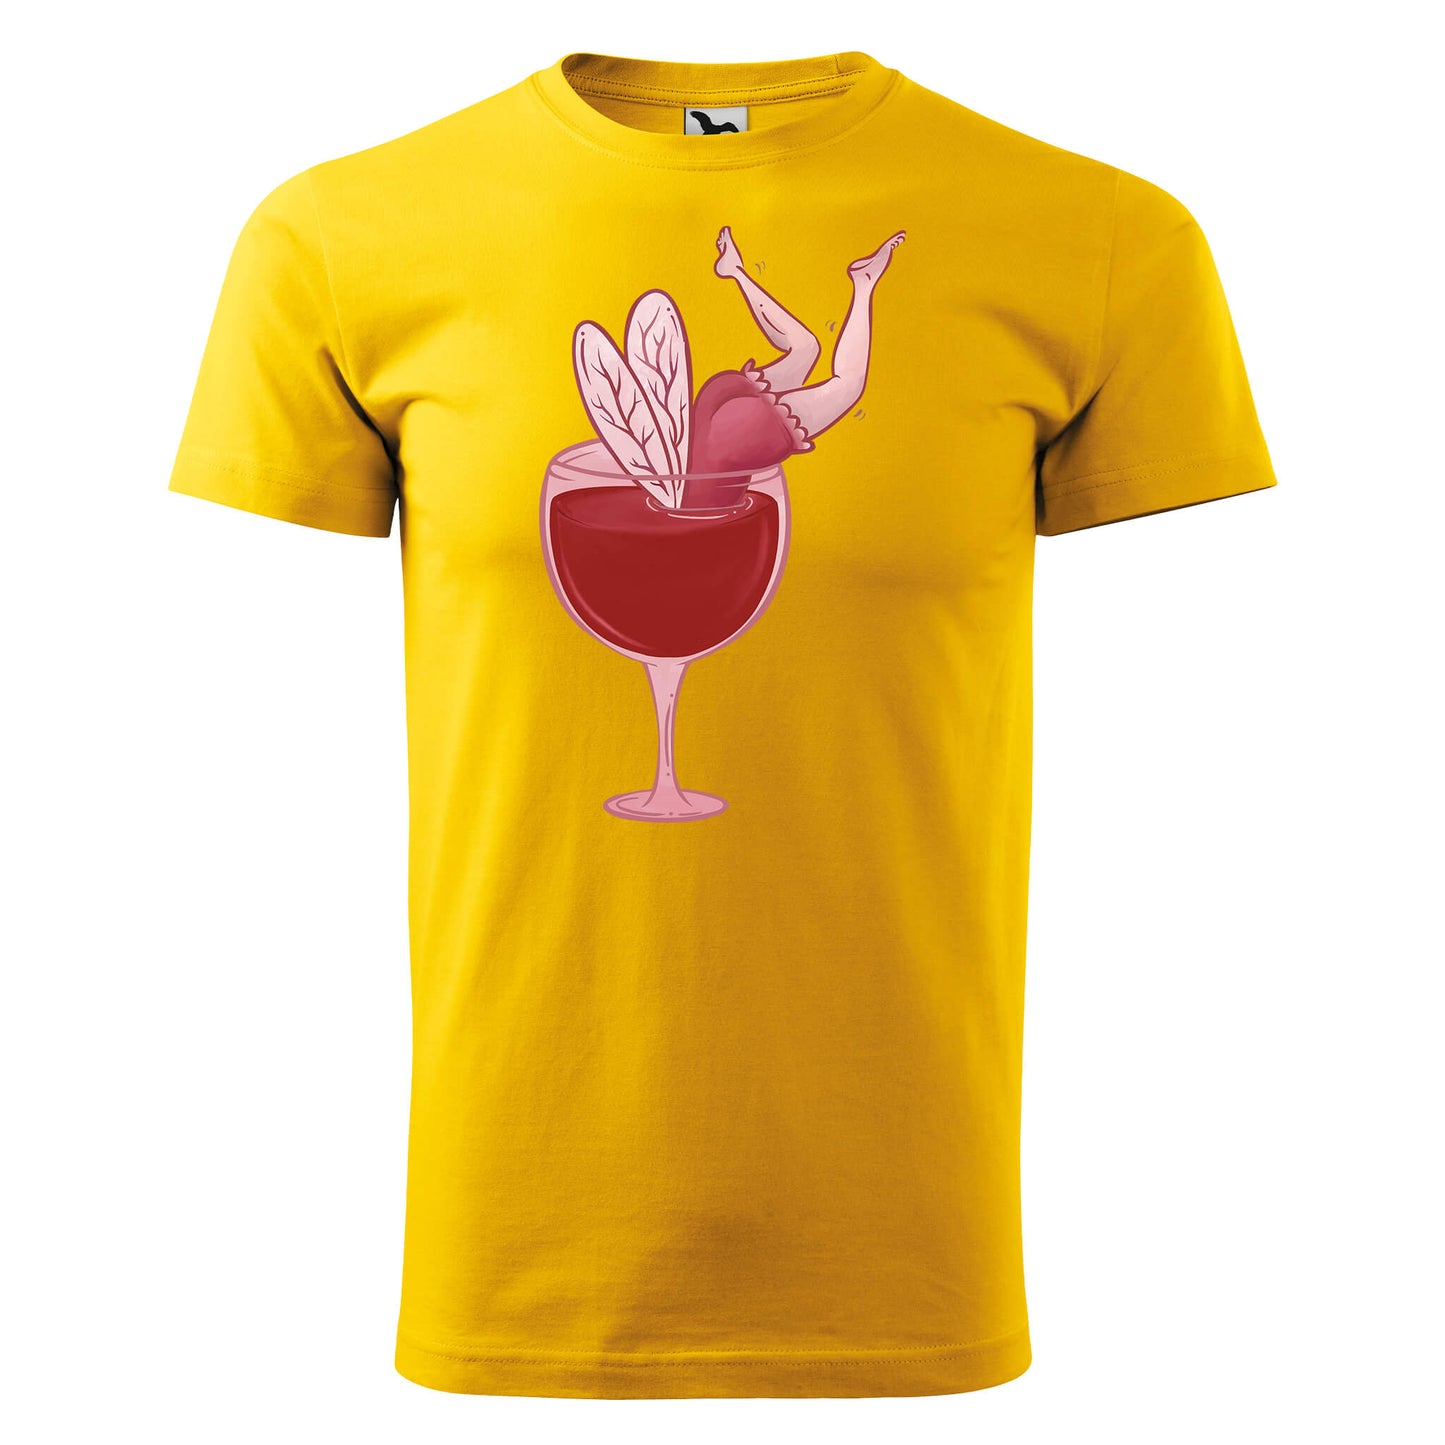 Drunk fairy t-shirt - rvdesignprint